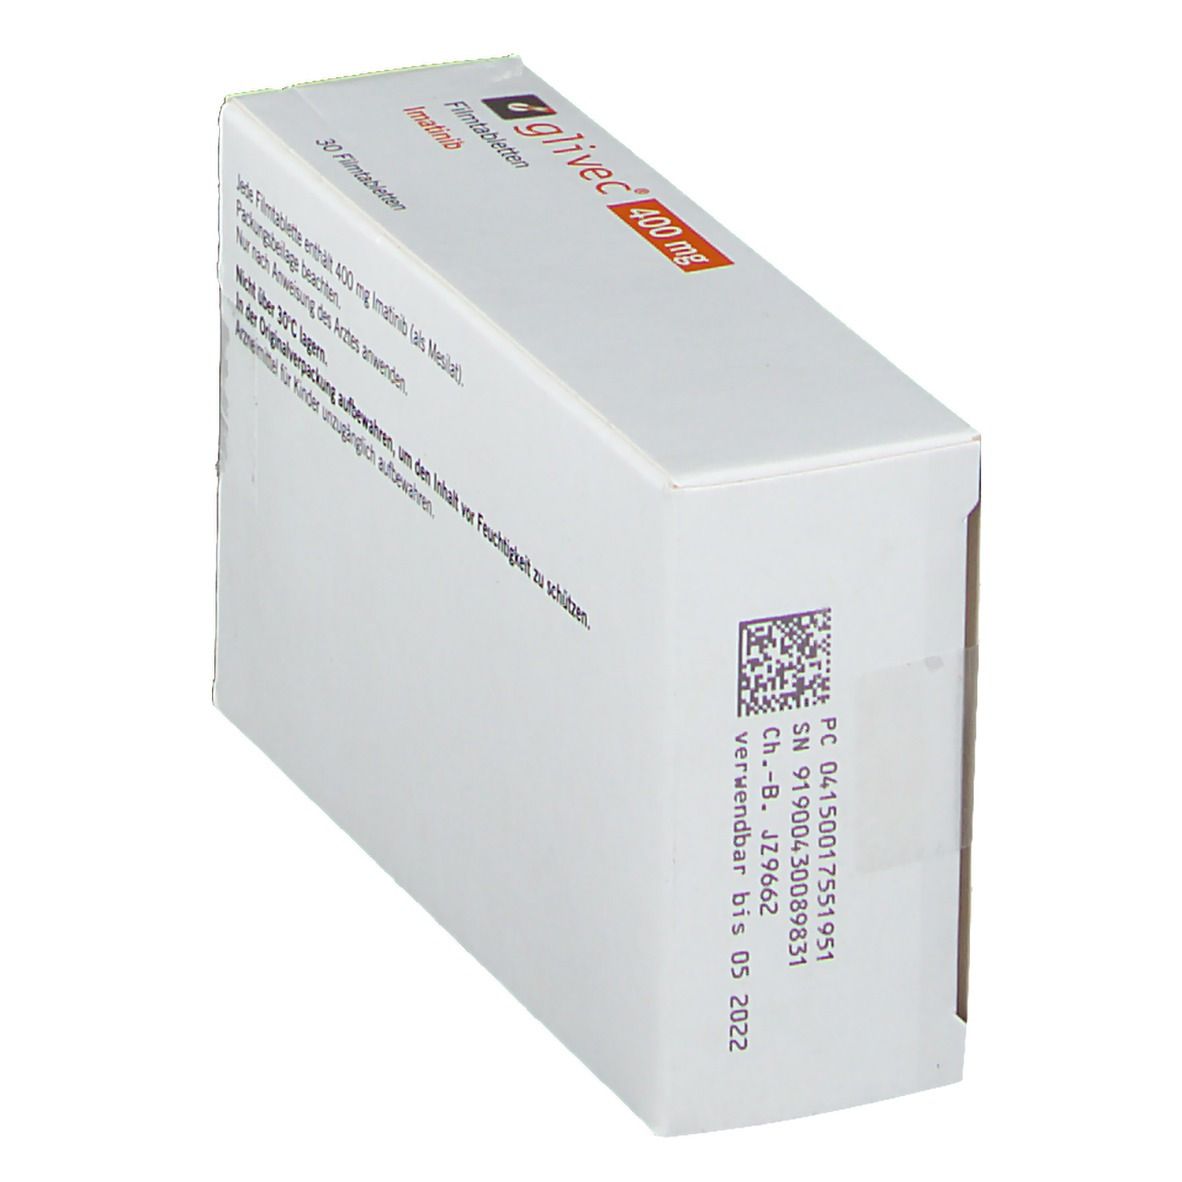 Glivec® 400 mg